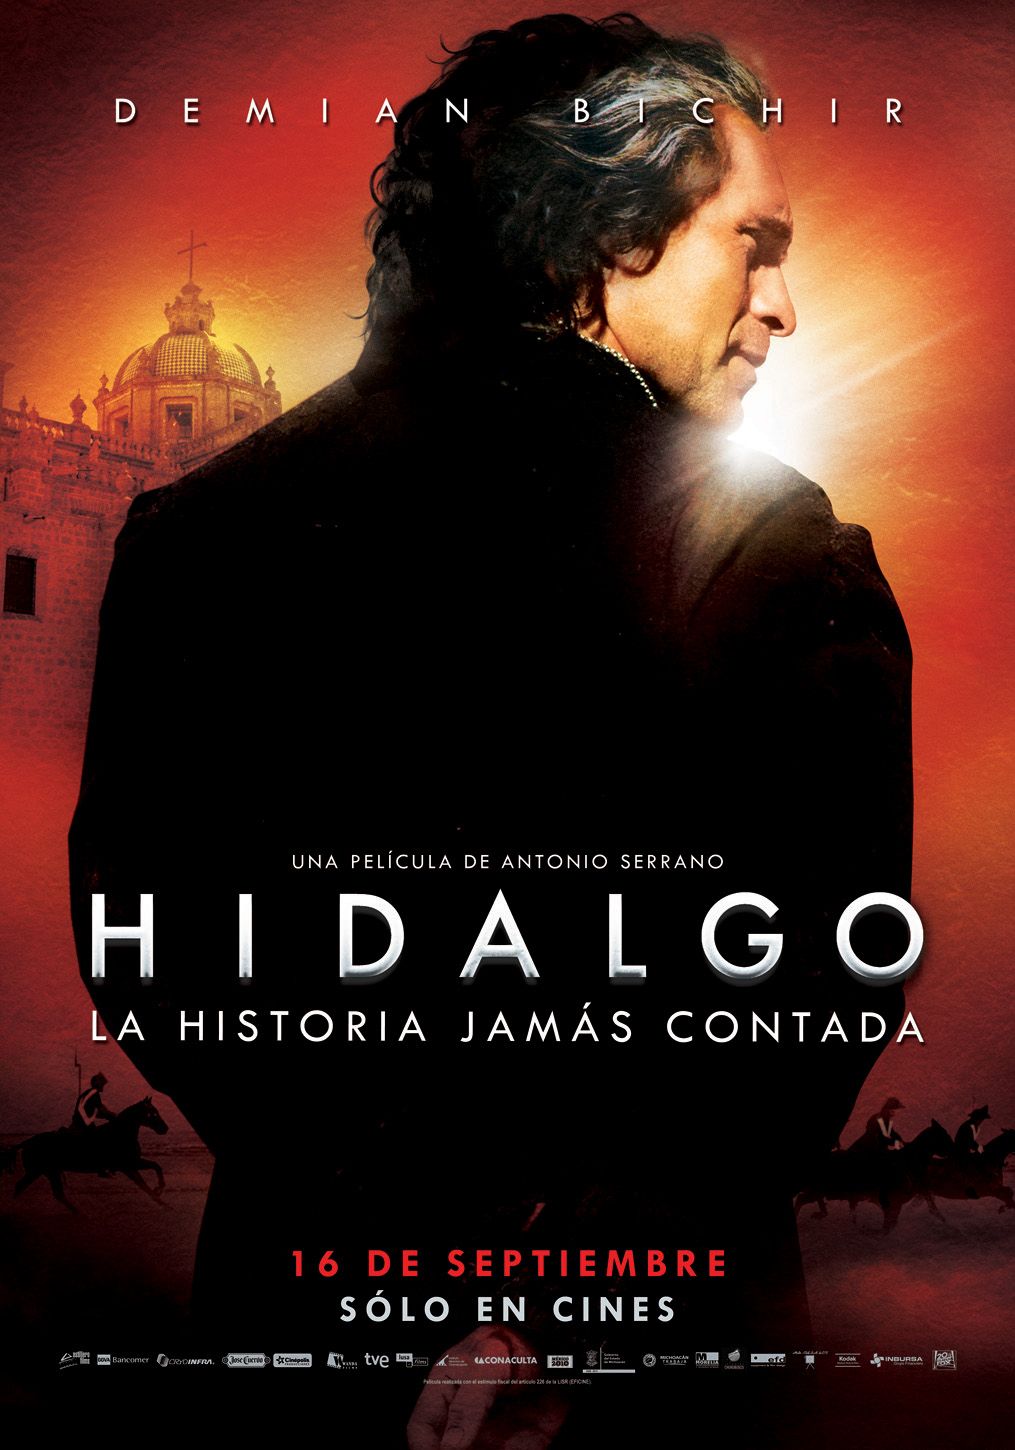 Extra Large Movie Poster Image for Hidalgo - La historia jamás contada. (#1 of 4)